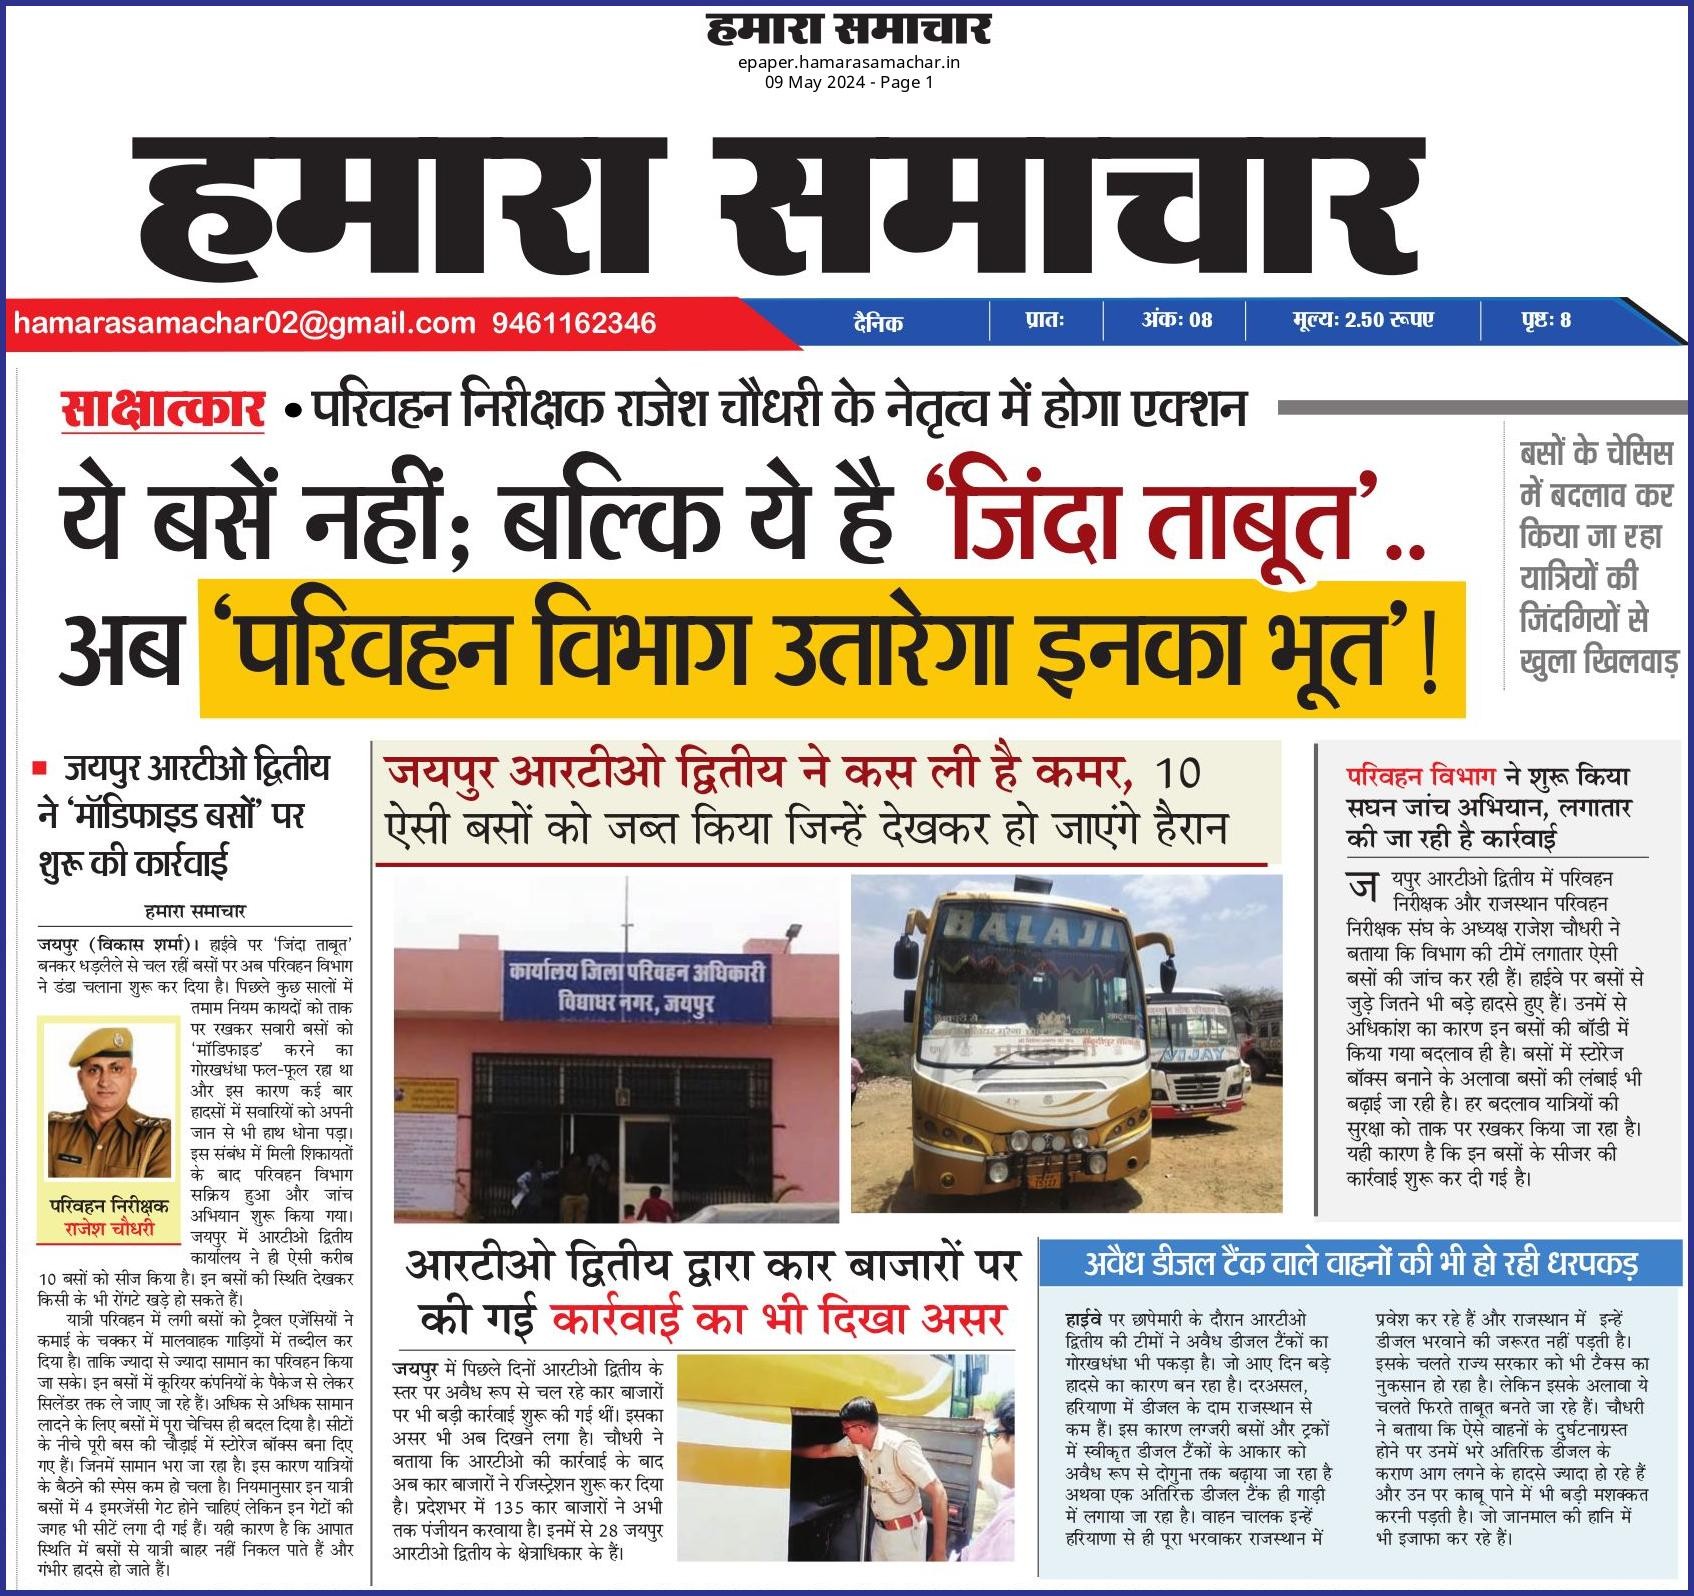 जयपुर आरटीओ द्वितीय ने ‘मॉडिफाइड बसों’ पर शुरू की कार्रवाई, बसों के चेसिस में बदलाव कर किया जा रहा यात्रियों की जिंदगियों से खुला खिलवाड़